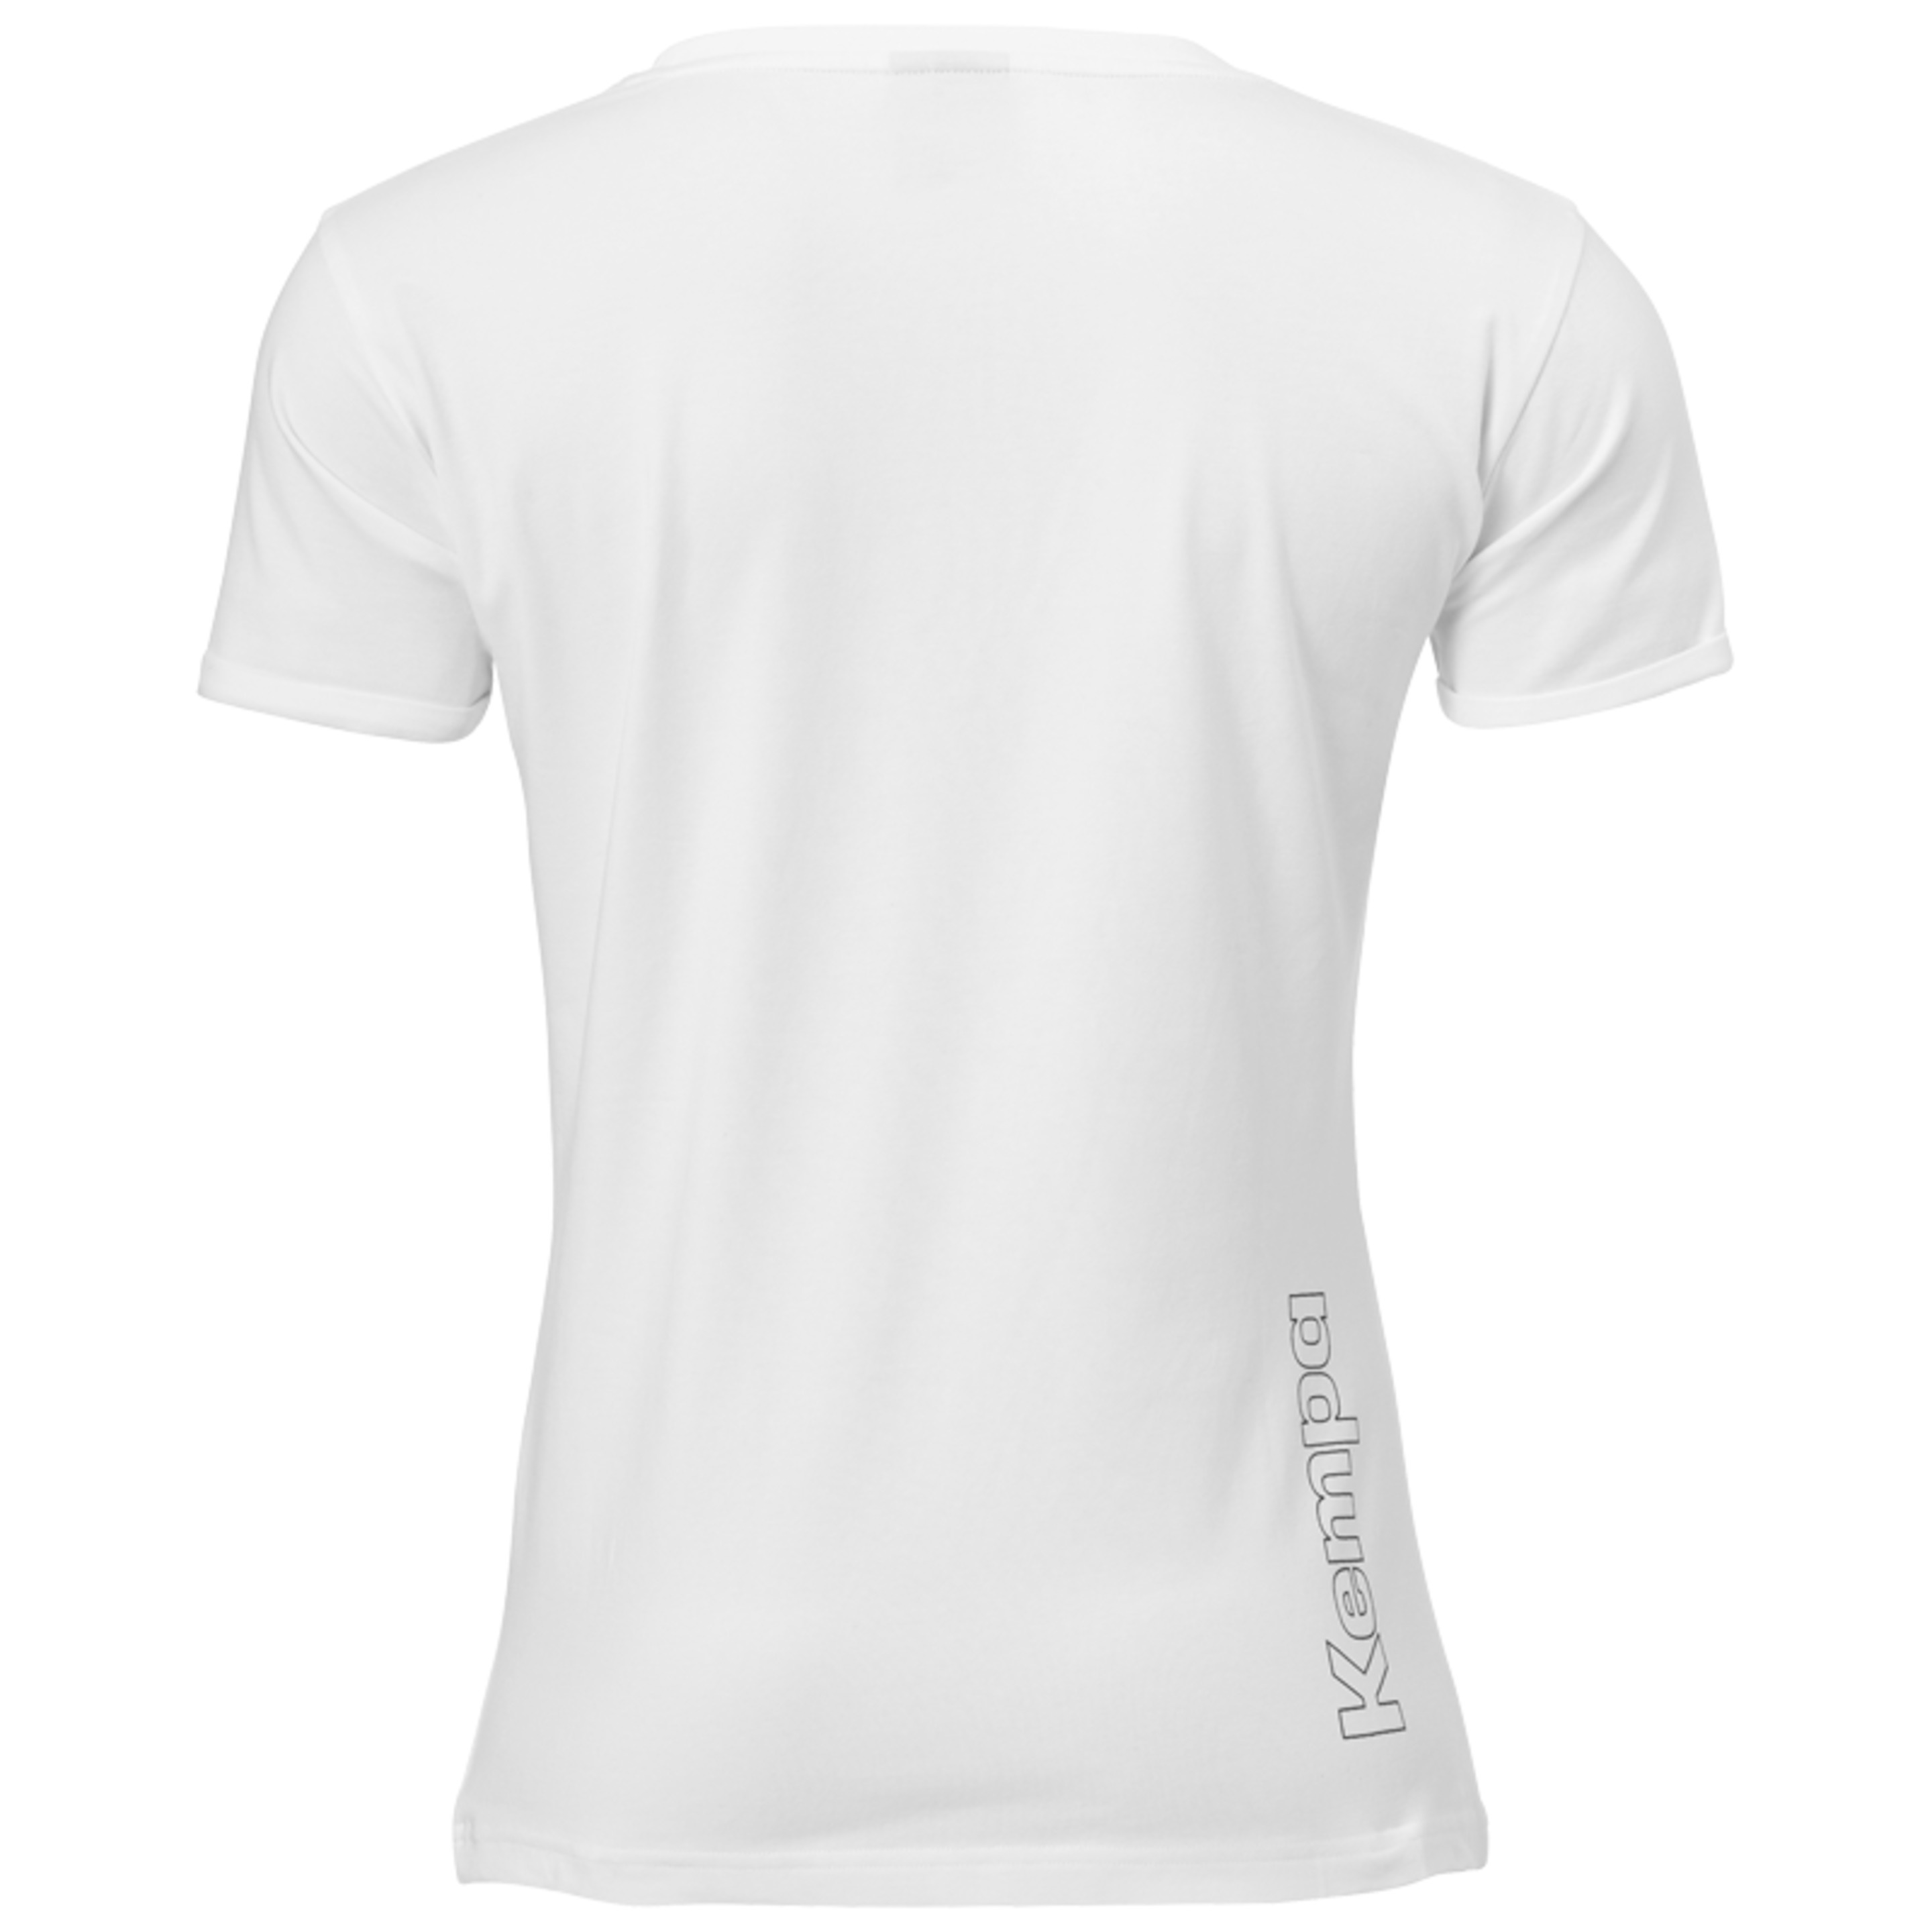 Core 2.0 T-shirt Women Blanco Kempa